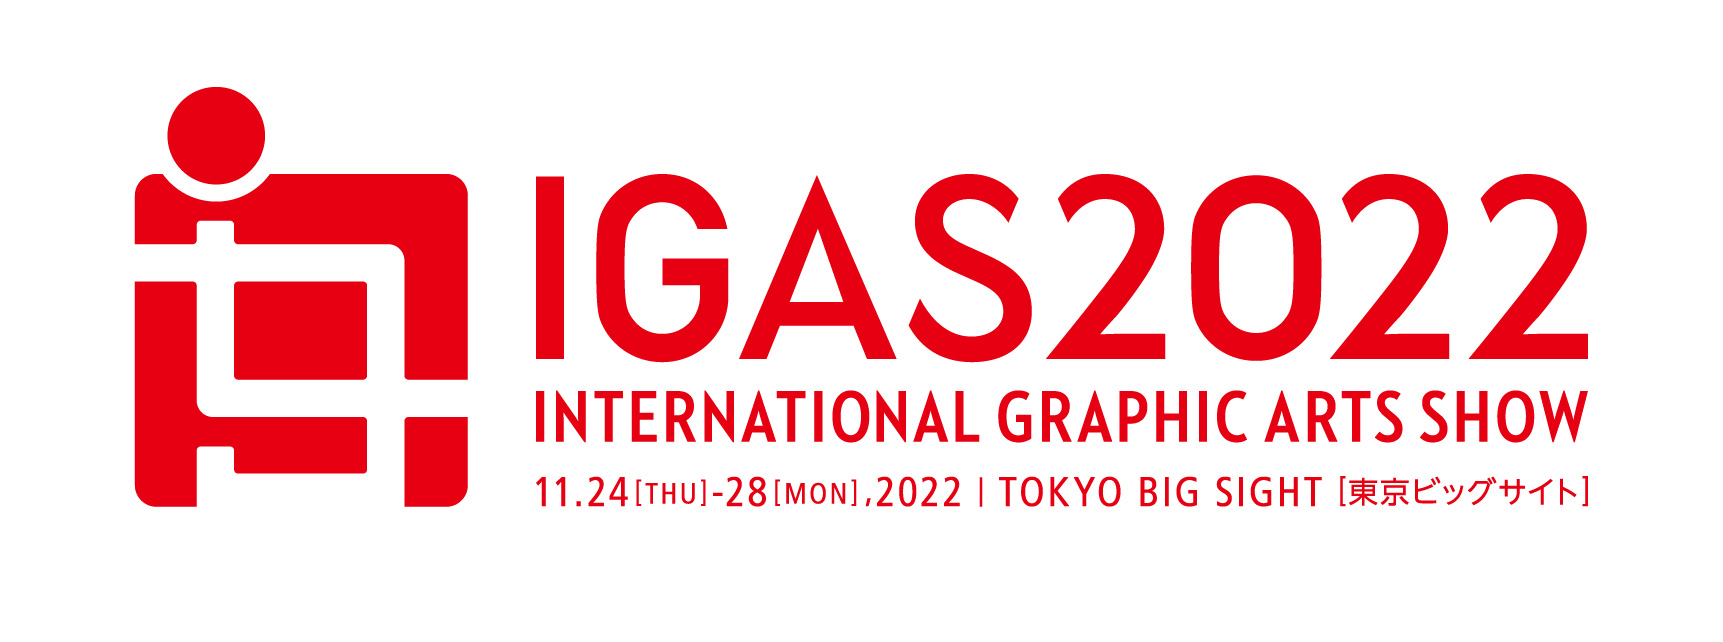 IGAS2022_JPG_red_A-1.jpg